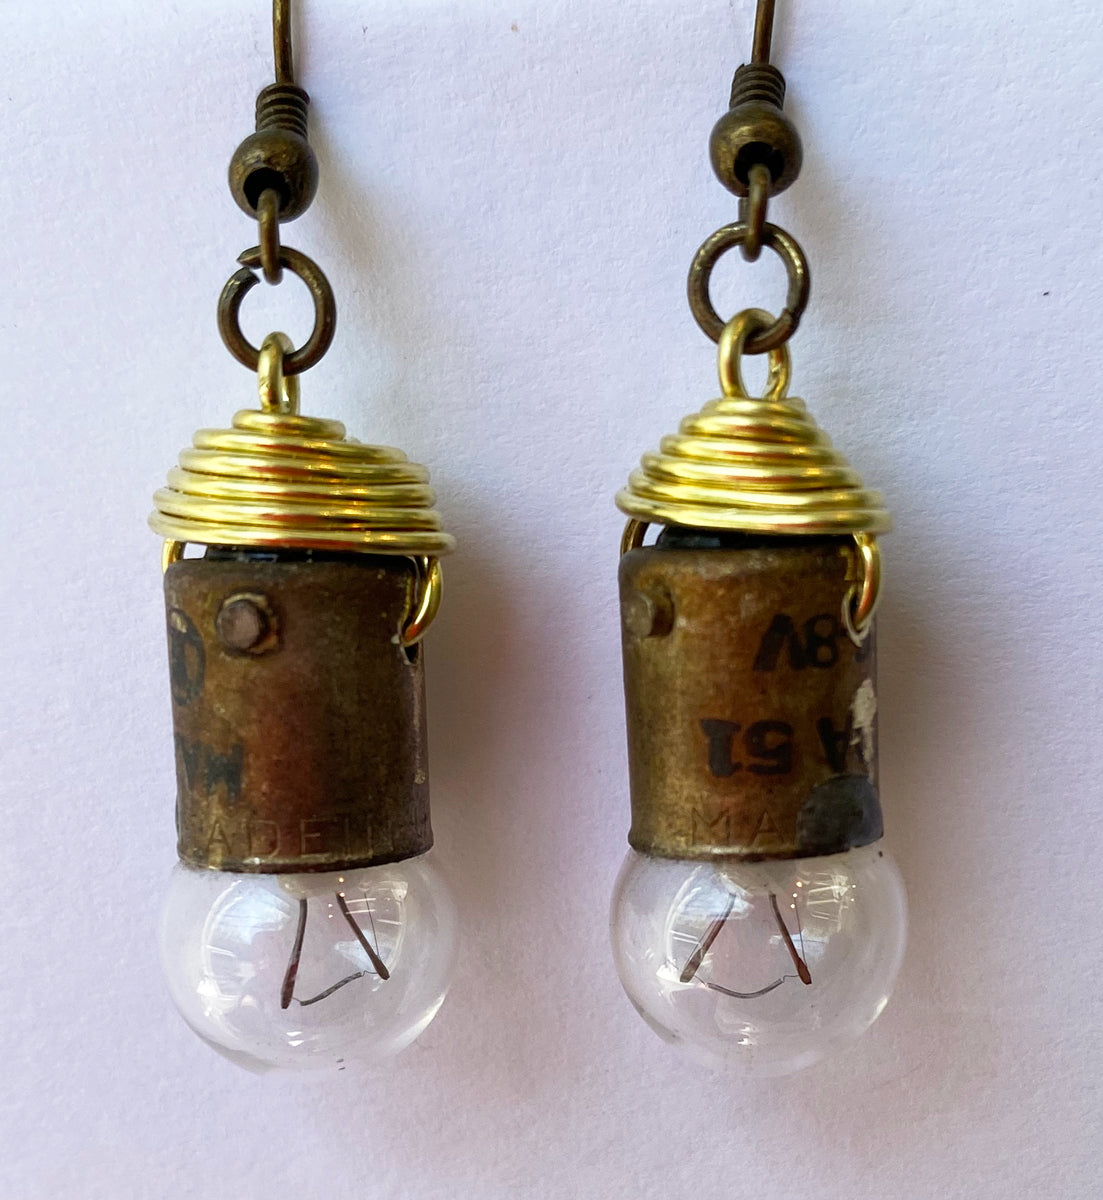 41. Lightbulb Earrings